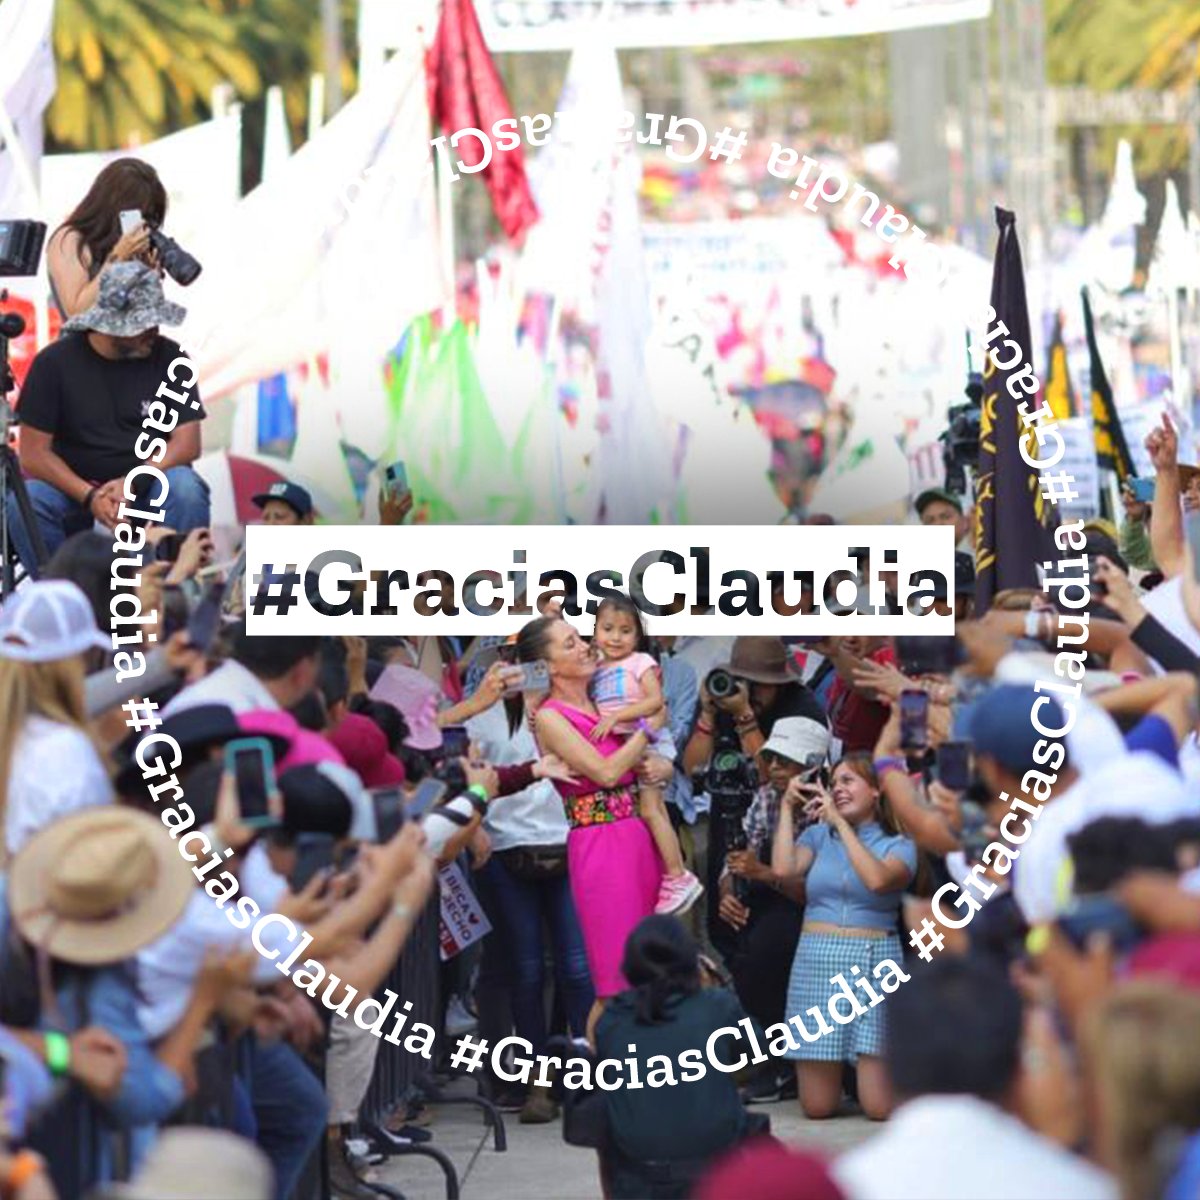 #GraciasClaudia porque cumpliste tus promesas de campaña, eso demuestra que #ClaudiaSiCumple 
@Claudiashein